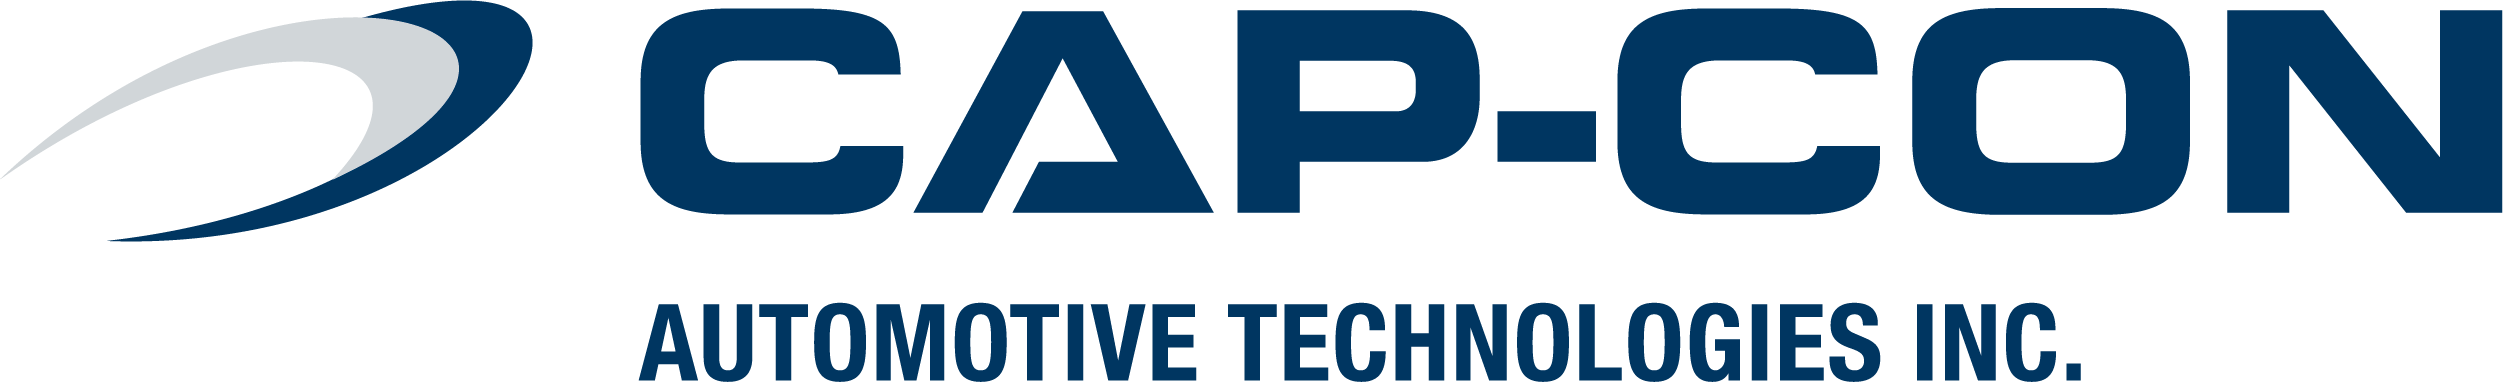 CAP-CON logo